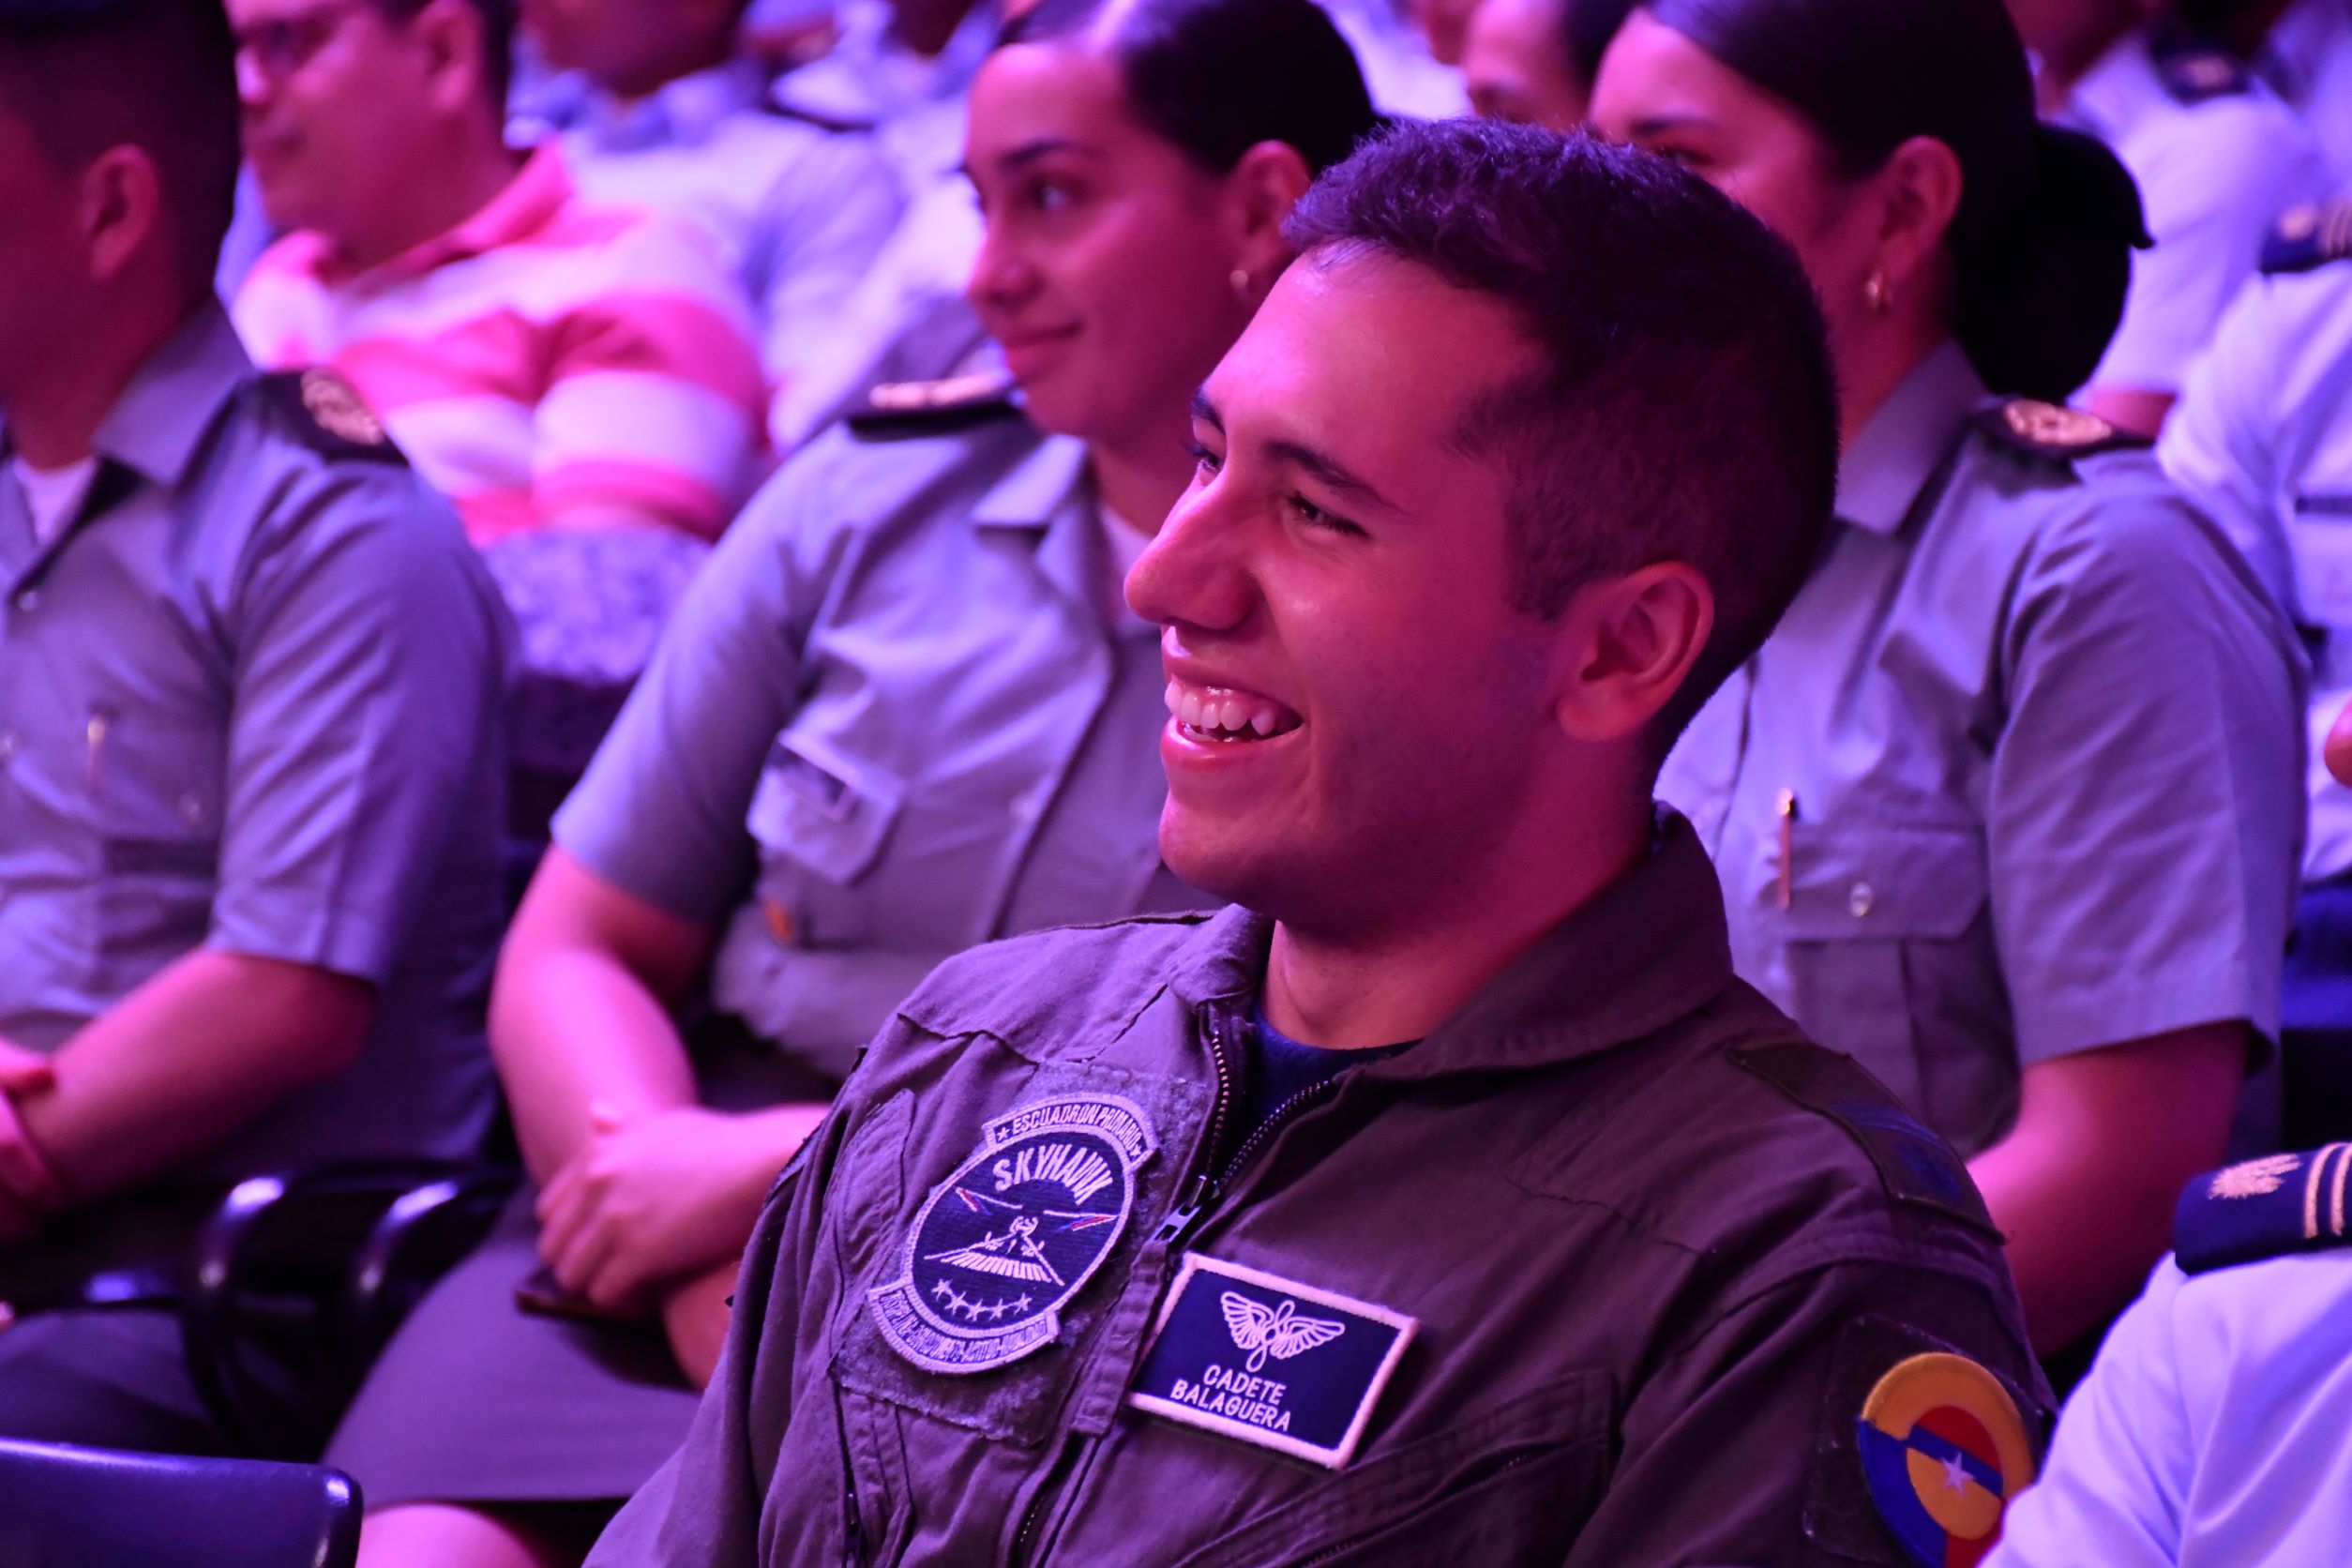 Así se vivió la Semana Universitaria 2022 en la Escuela Militar de Aviación “Marco Fidel Suárez”, un evento World Space Week Colombia 